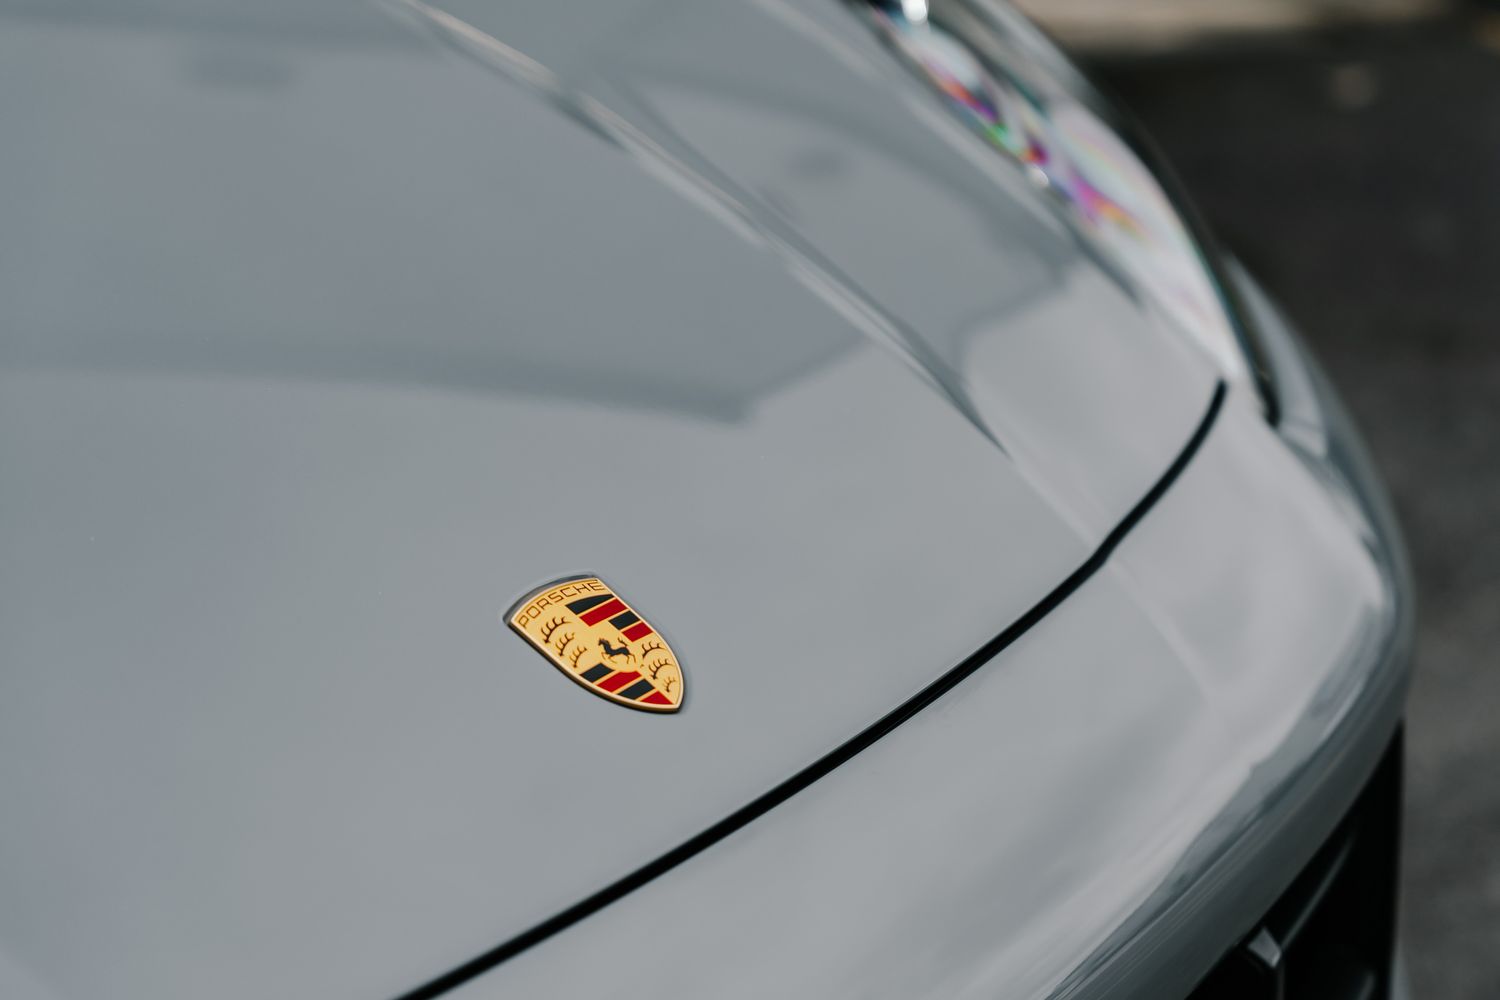 Porsche Cayenne Turbo GT